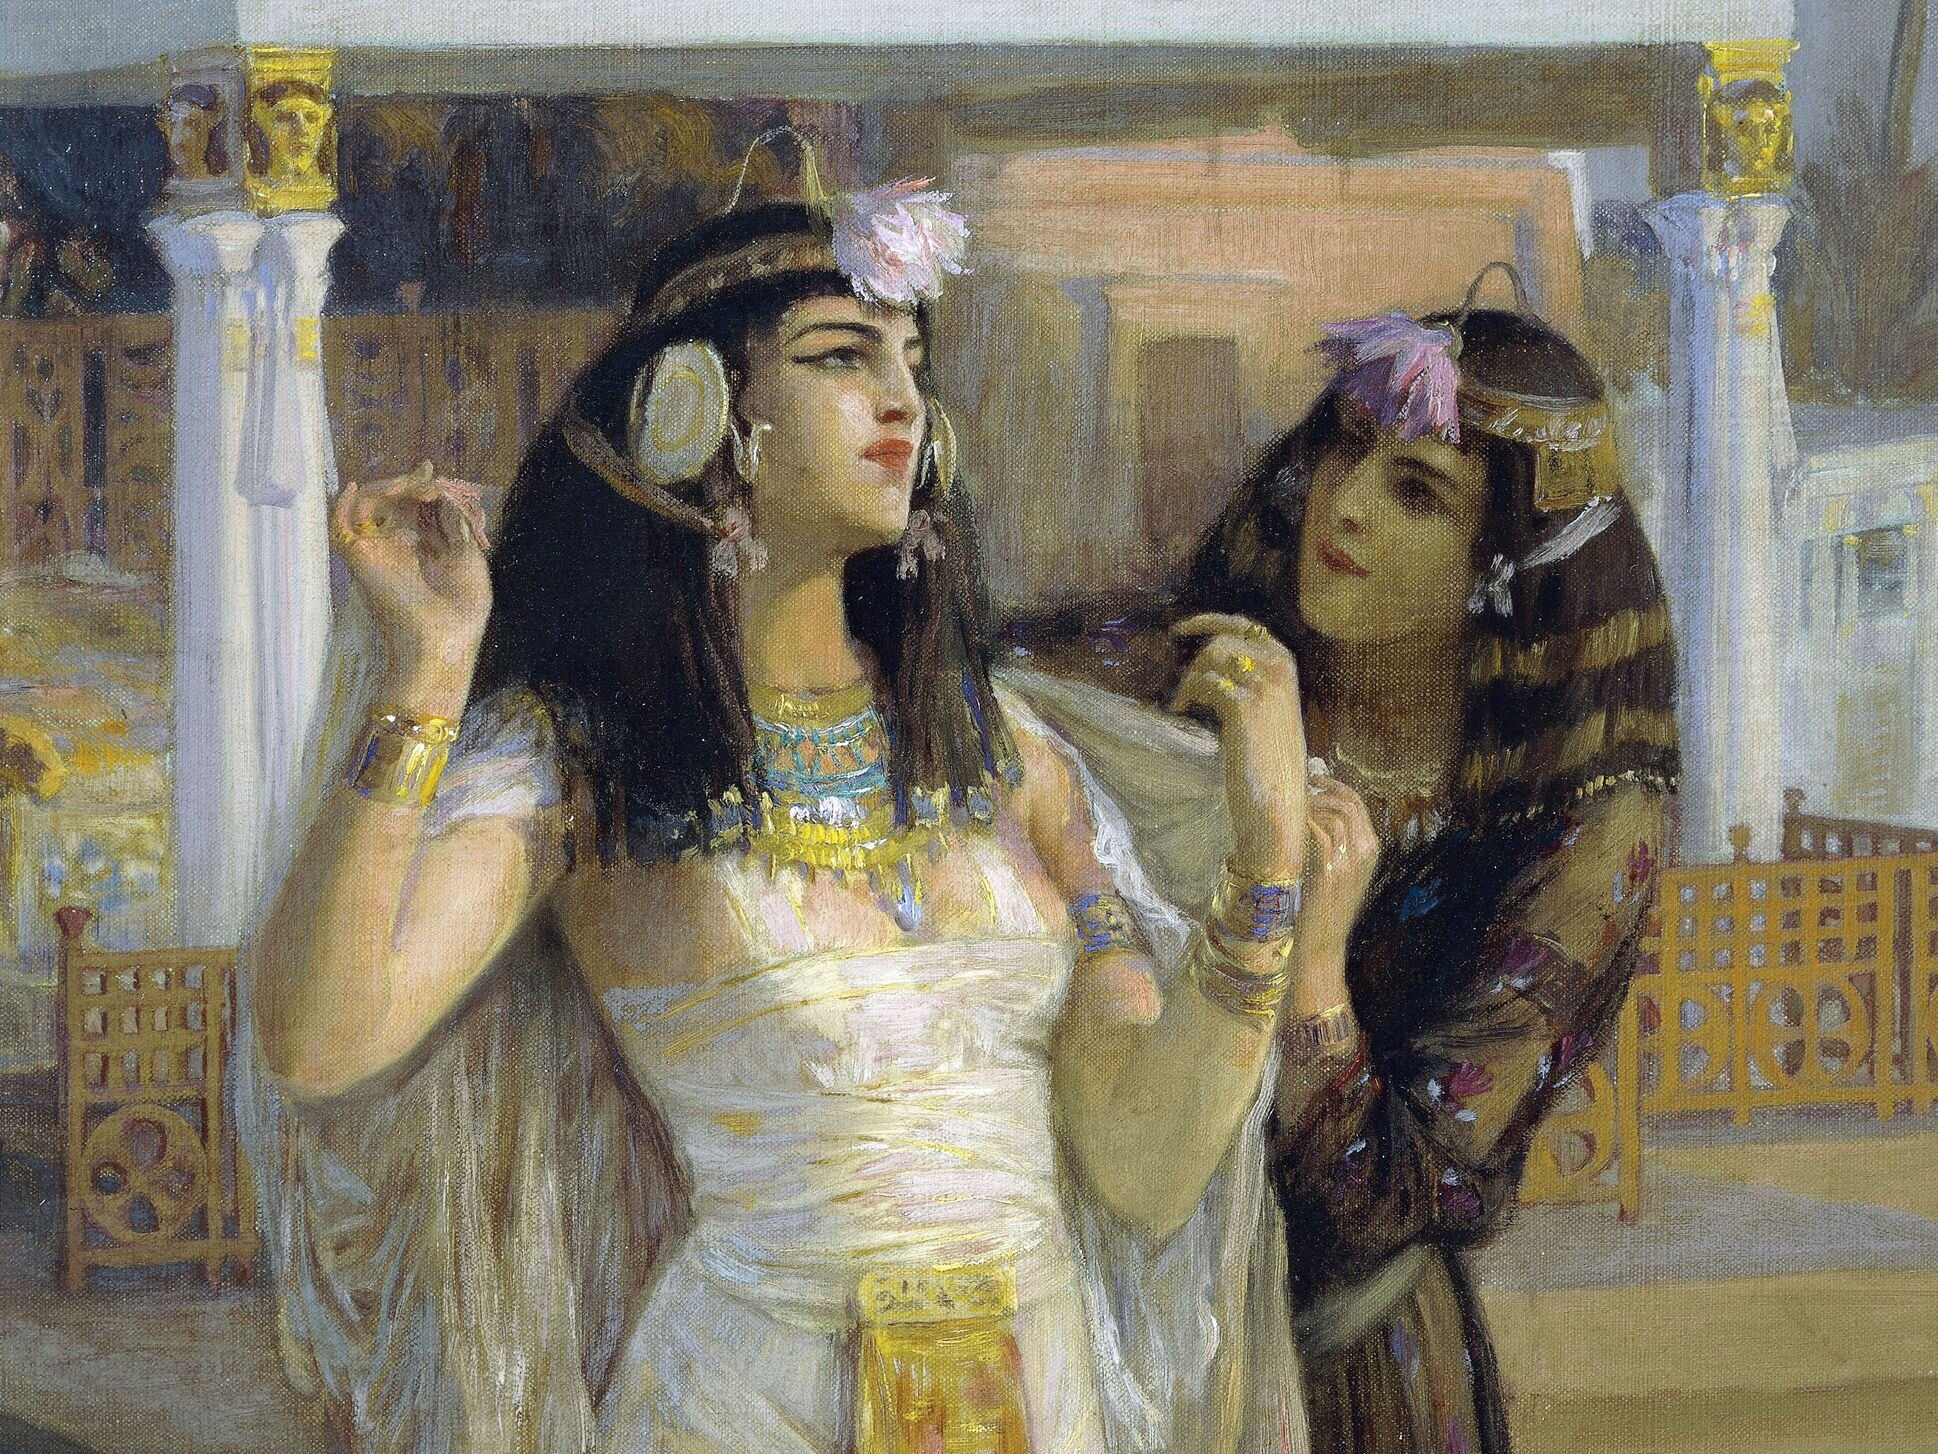 Споровете как е изглеждала в действителност властната египетска царица Клеопатра